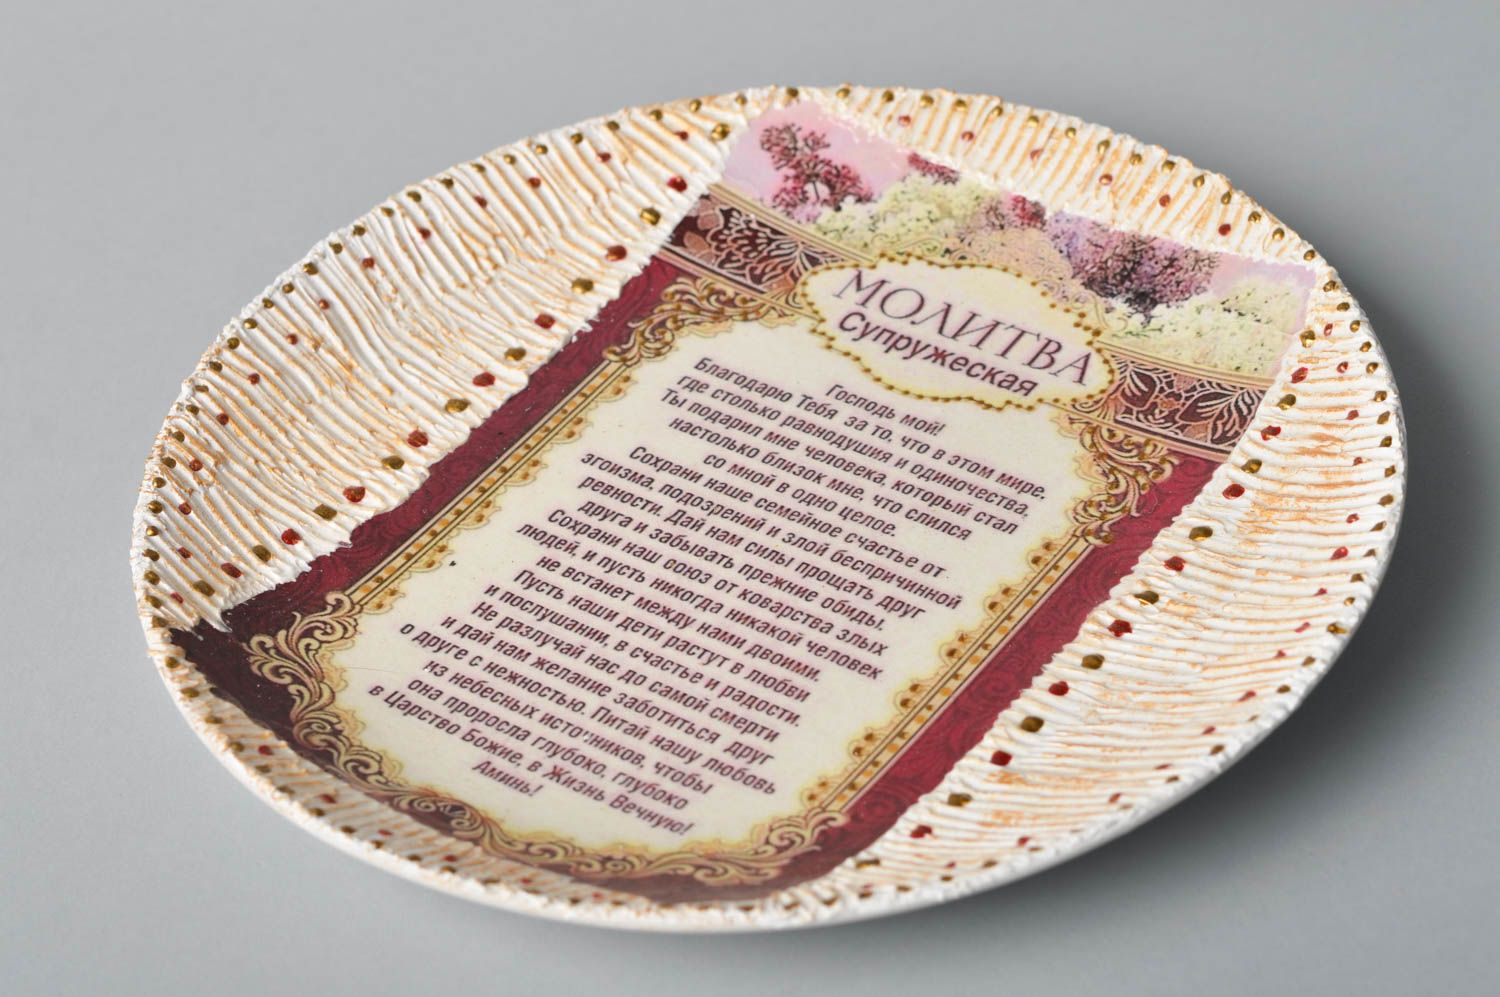 Plato de cerámica hecho a mano para casa vajilla moderna utensilio de cocina foto 5